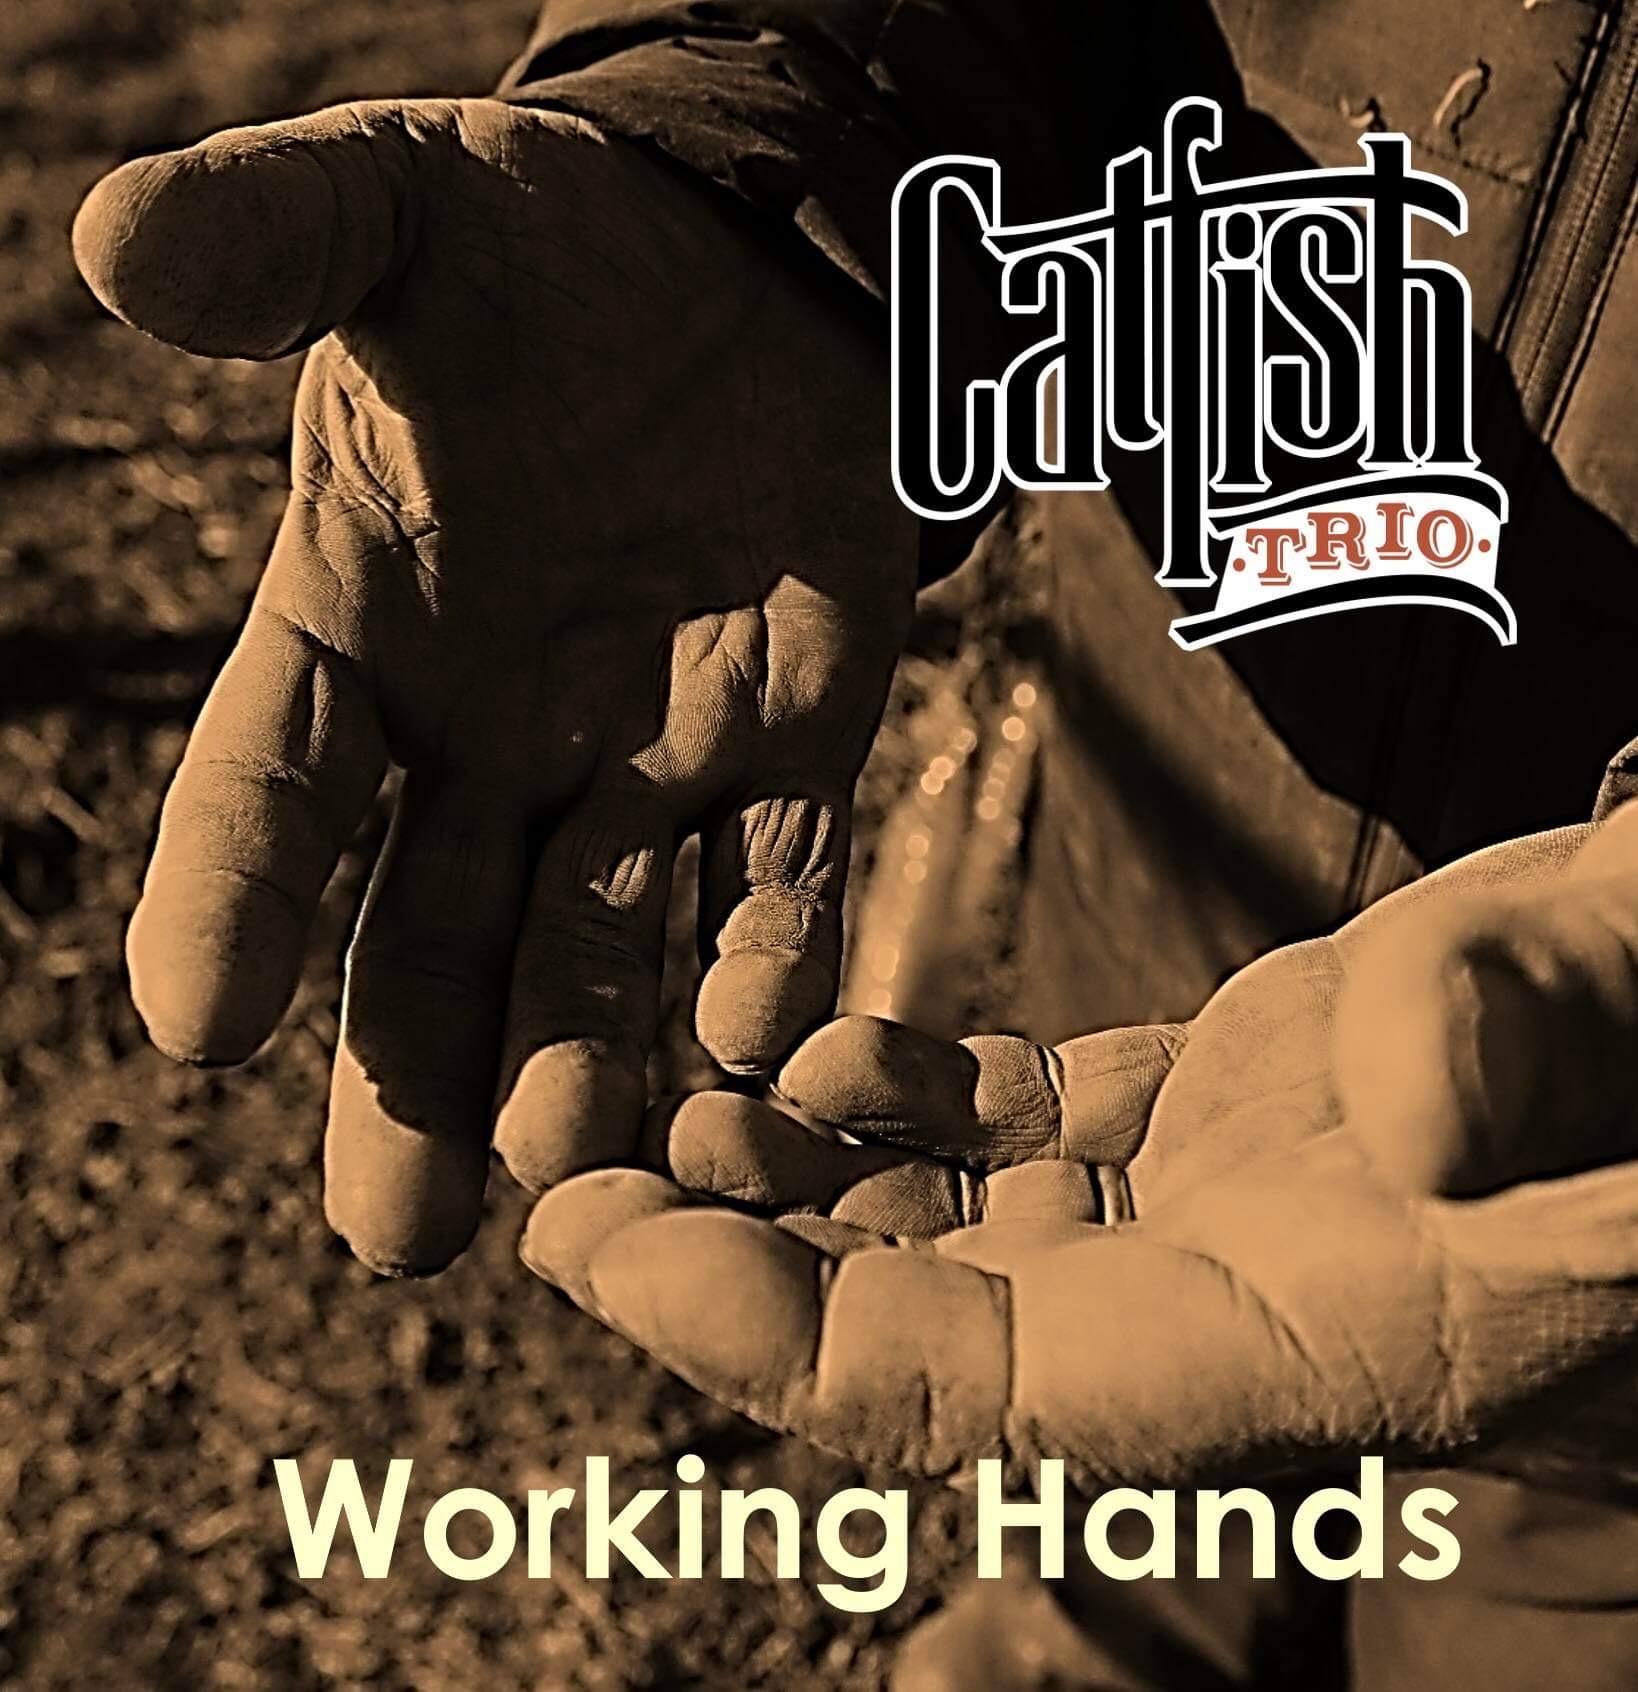 NEW ALBUM: WORKING HANDS